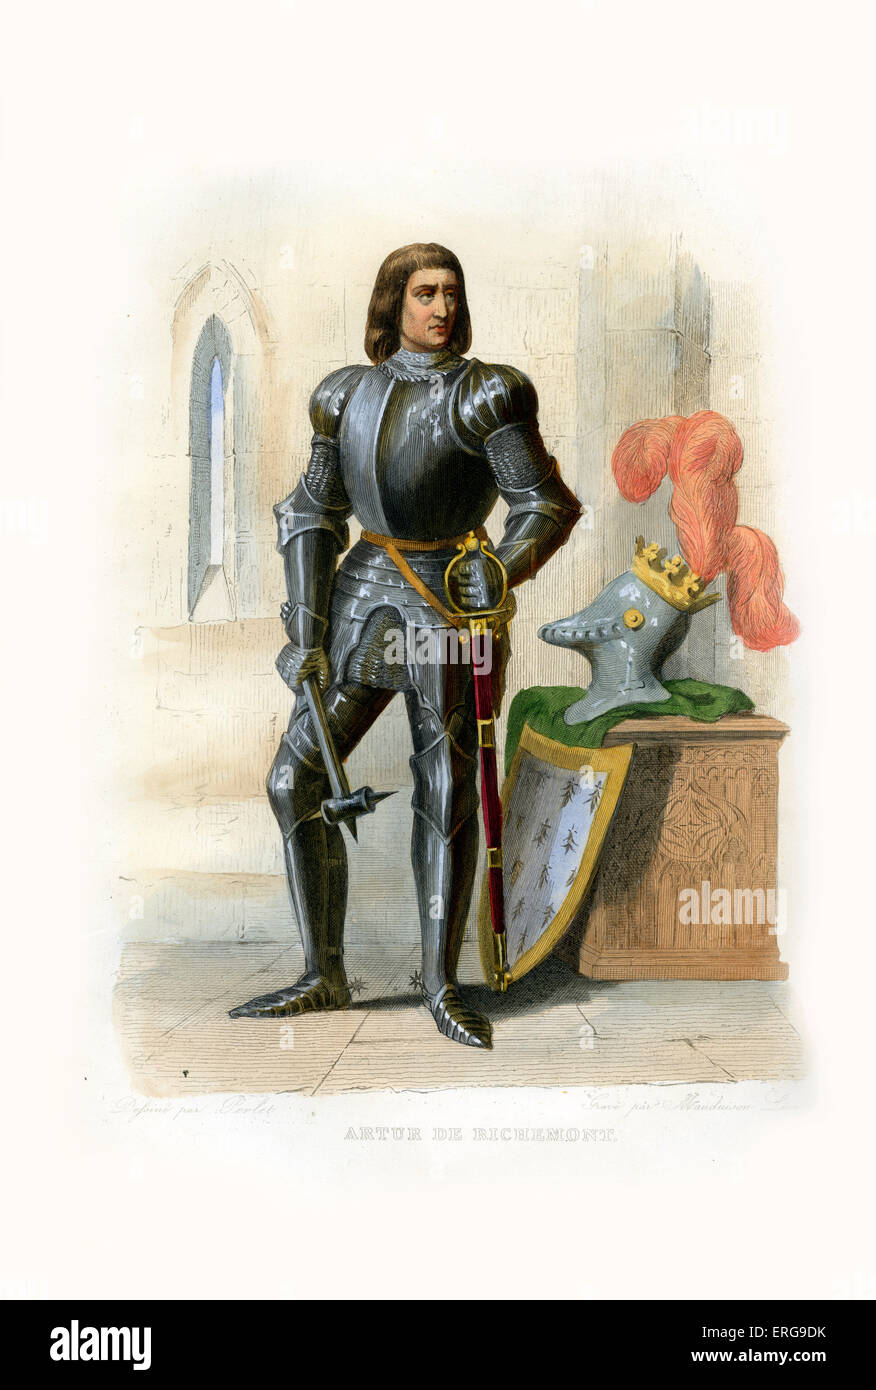 Artur de Richemont, noto anche come Arthur III. Signore di Parthenay e titolare conte di Richmond in Inghilterra. 1393-1458. Incisione di Mauduison Léon, c.1846. Foto Stock